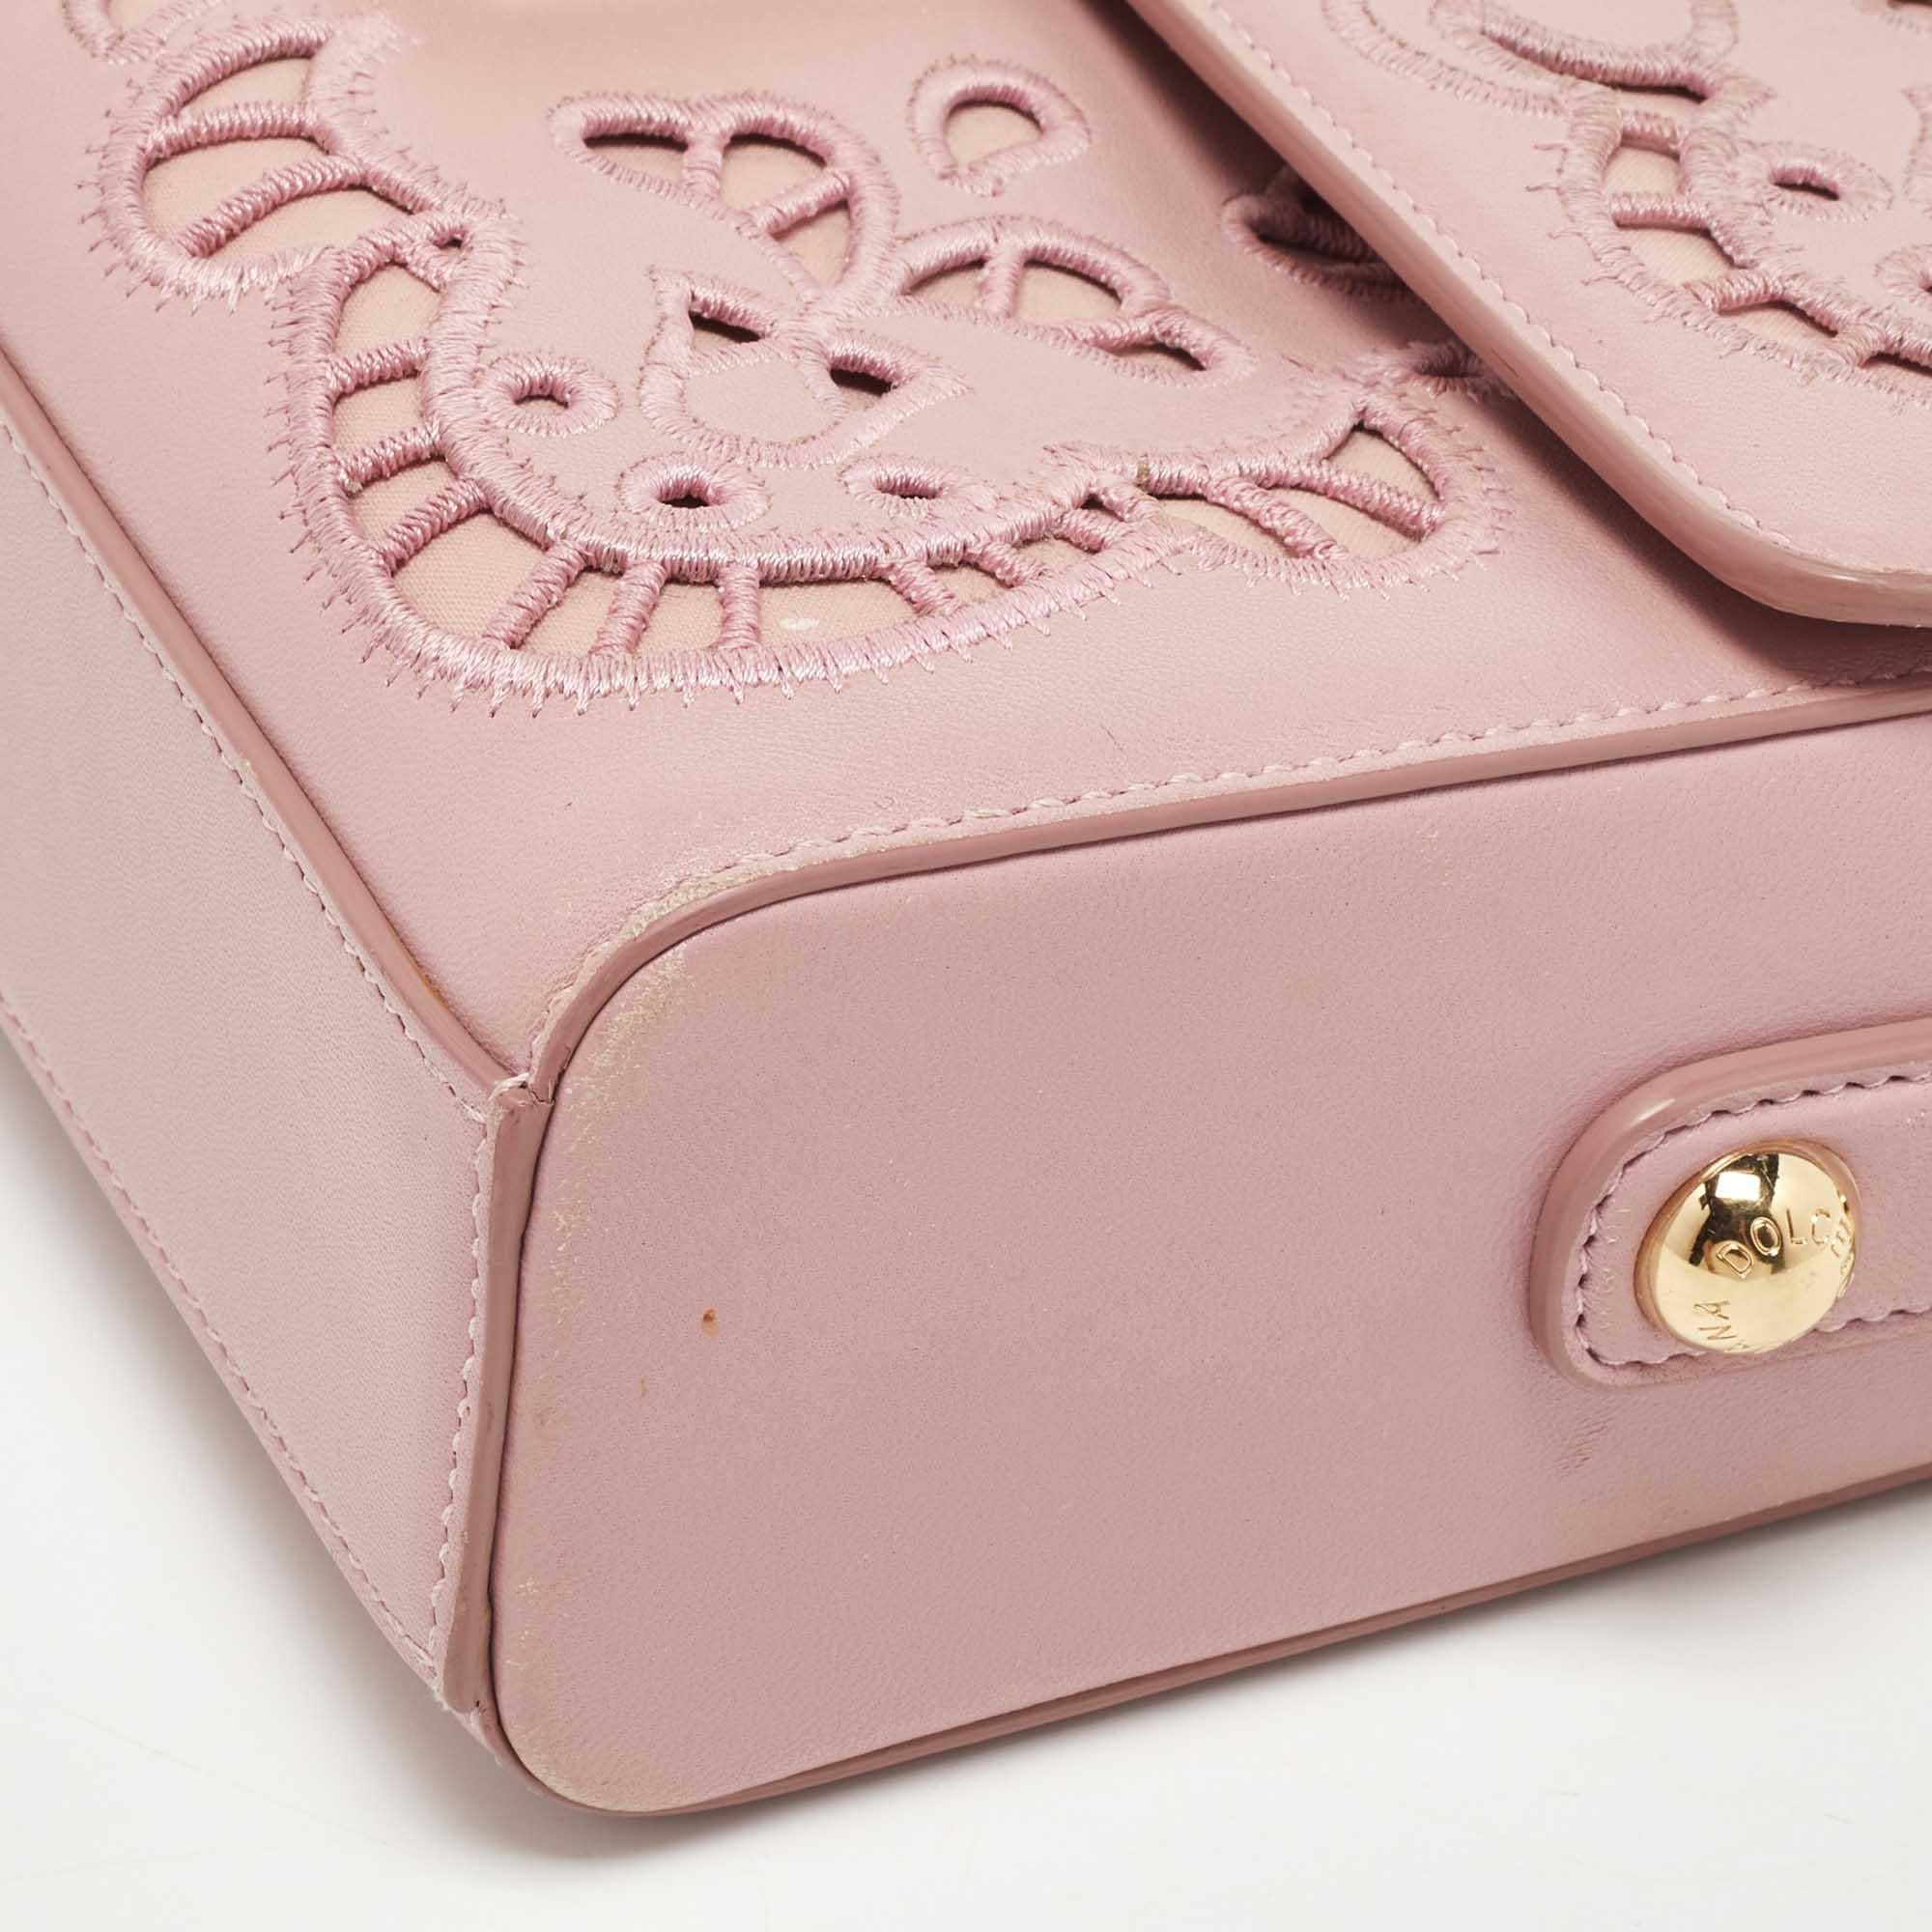 Dolce & Gabbana Pink Leather Embroidered Dolce Shoulder Bag For Sale 12